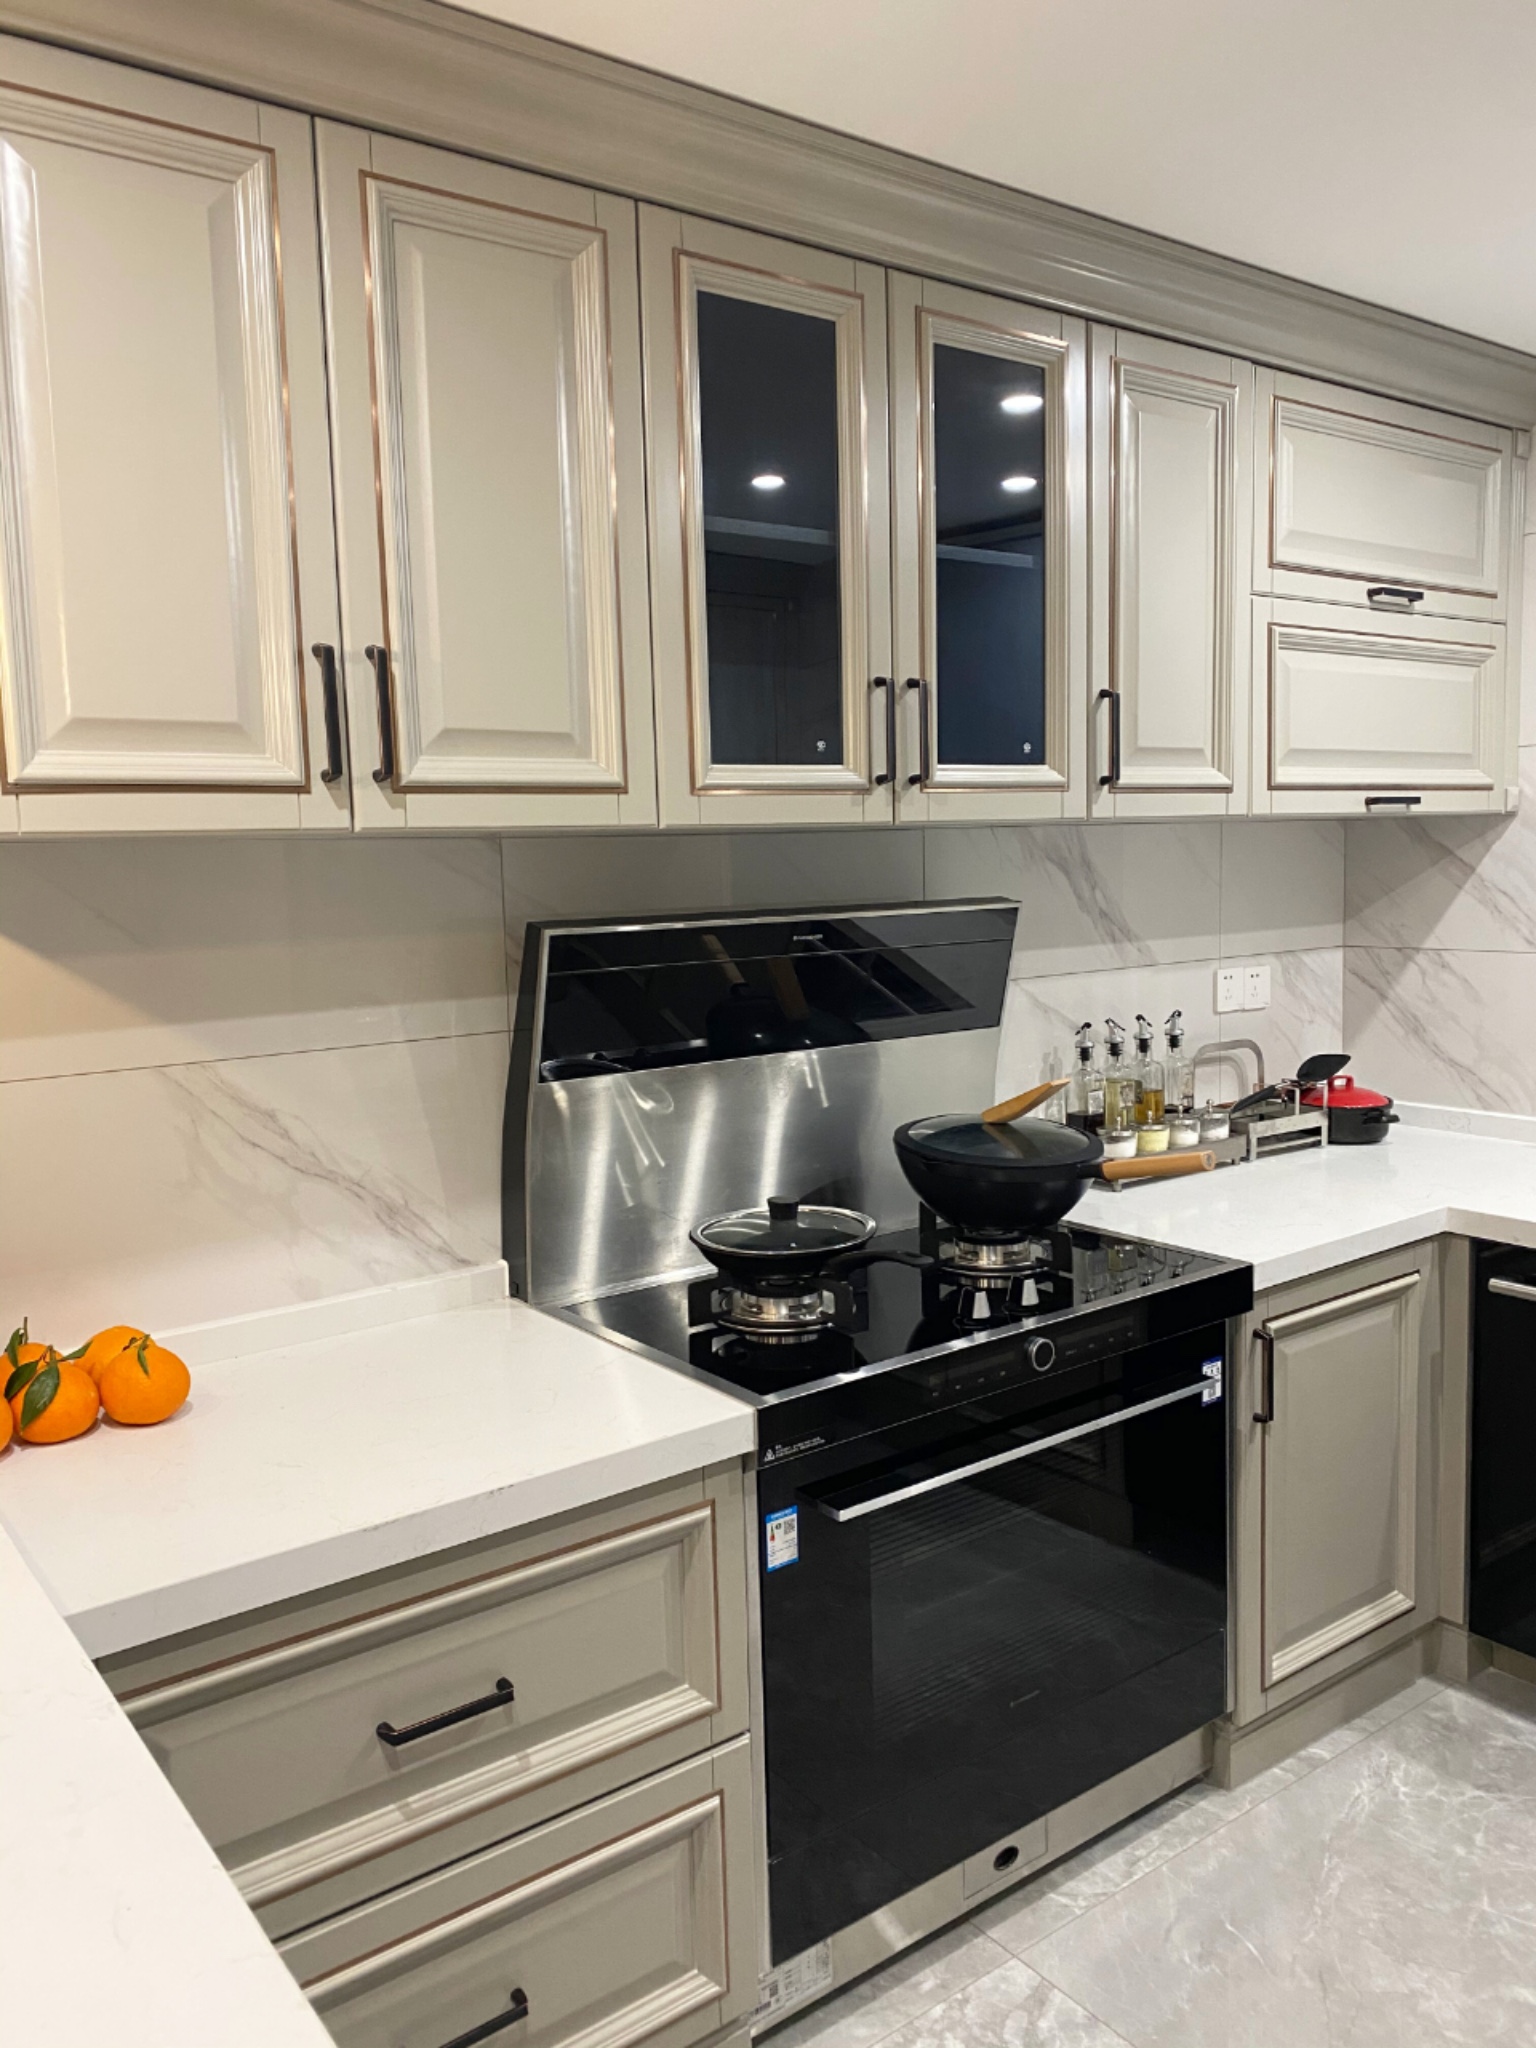 [用户分享]开放式厨房能既整洁又将可利用空间升级?集成灶好用吗?